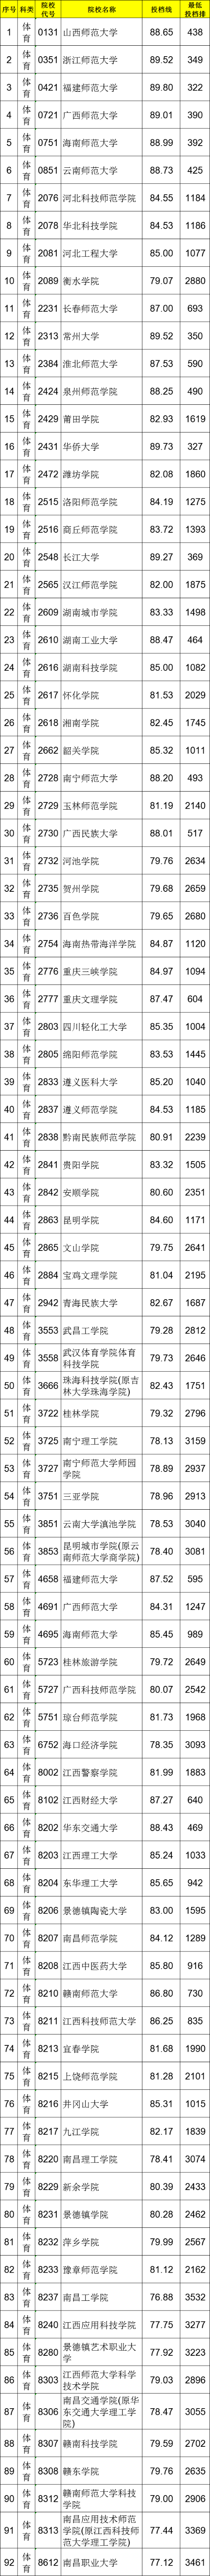 江西省2021年普通高校招生第二批本科体育类投档情况统计表